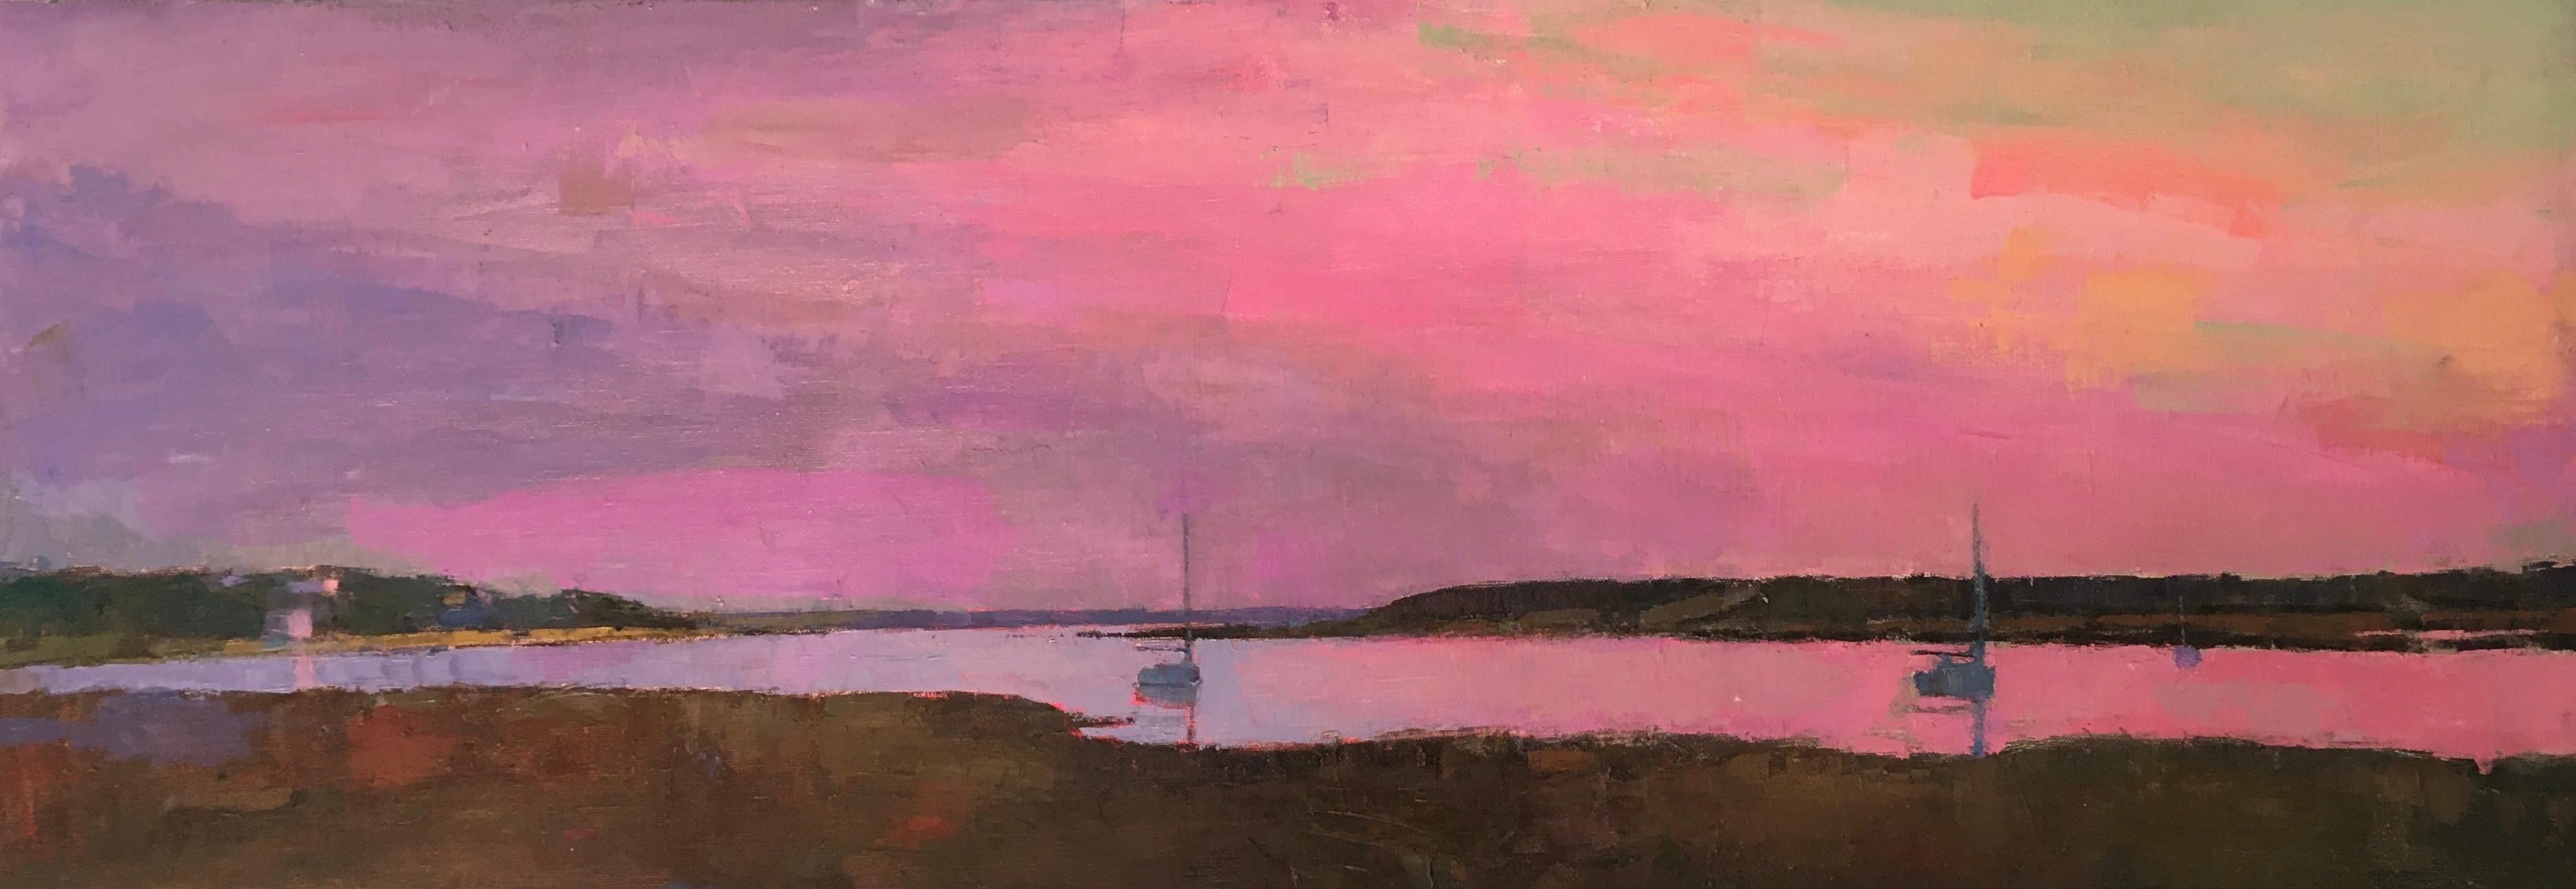 Larry Horowitz Landscape Painting – ""Pink Dusk"" Panorama-Ölgemälde eines rosa Himmels, der sich auf einem Hafen spiegelt